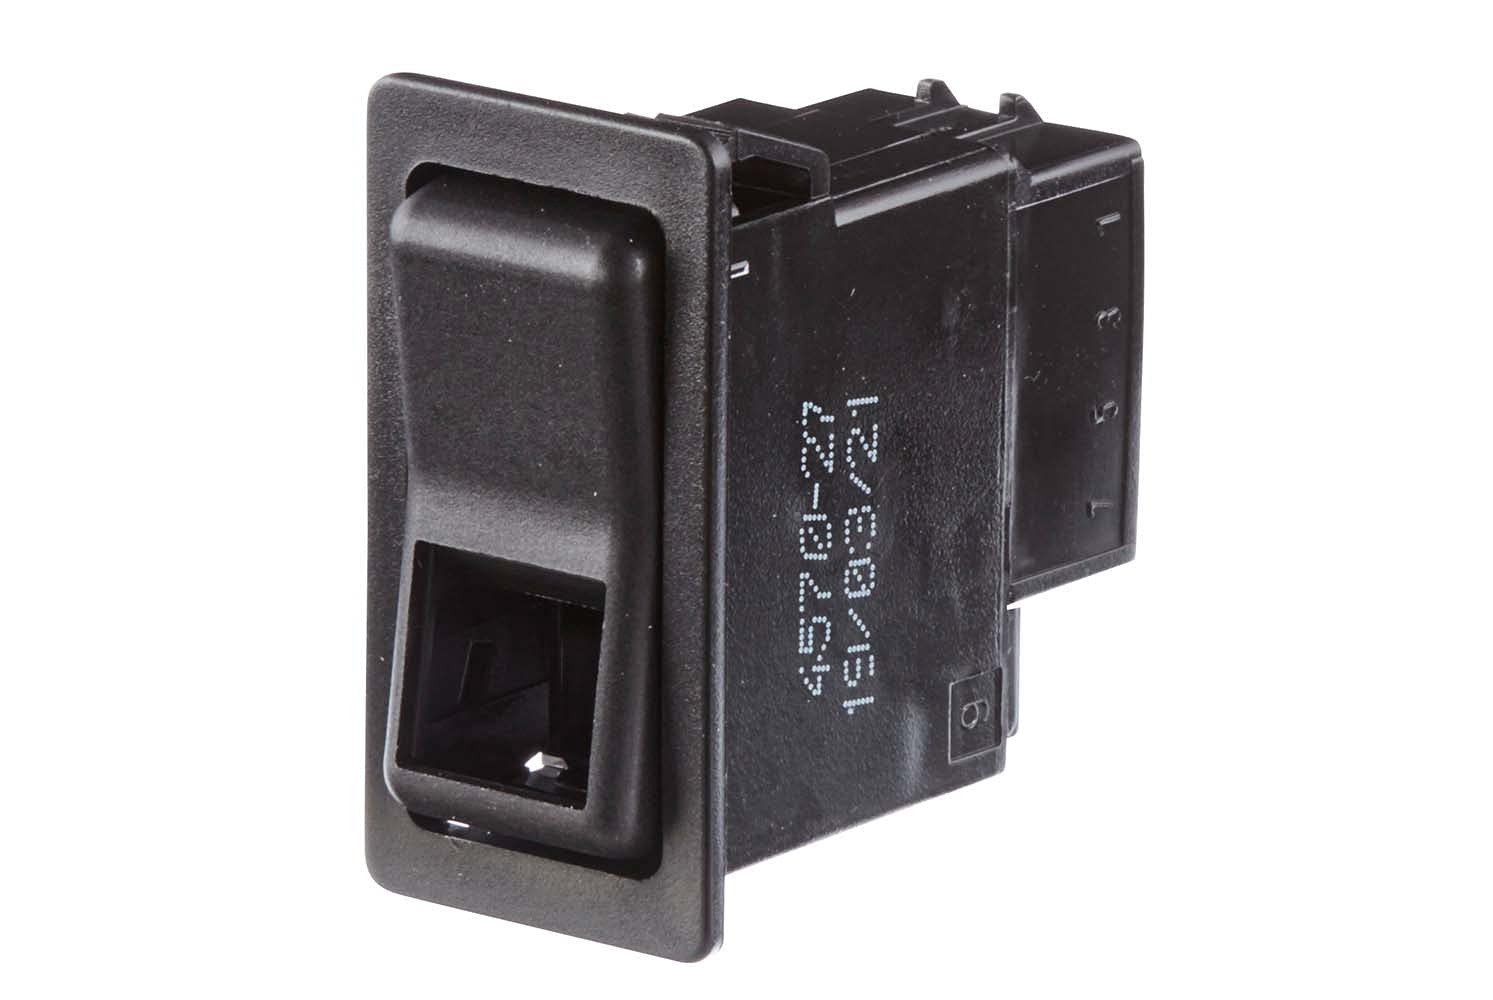 HELLA - Schalter - Wippbetätigung - Ausstattungsvar.: I->0<-+II - Anschlussanzahl: 6 - ohne Komfortfunktion - 6GM 004 570-271 von Hella